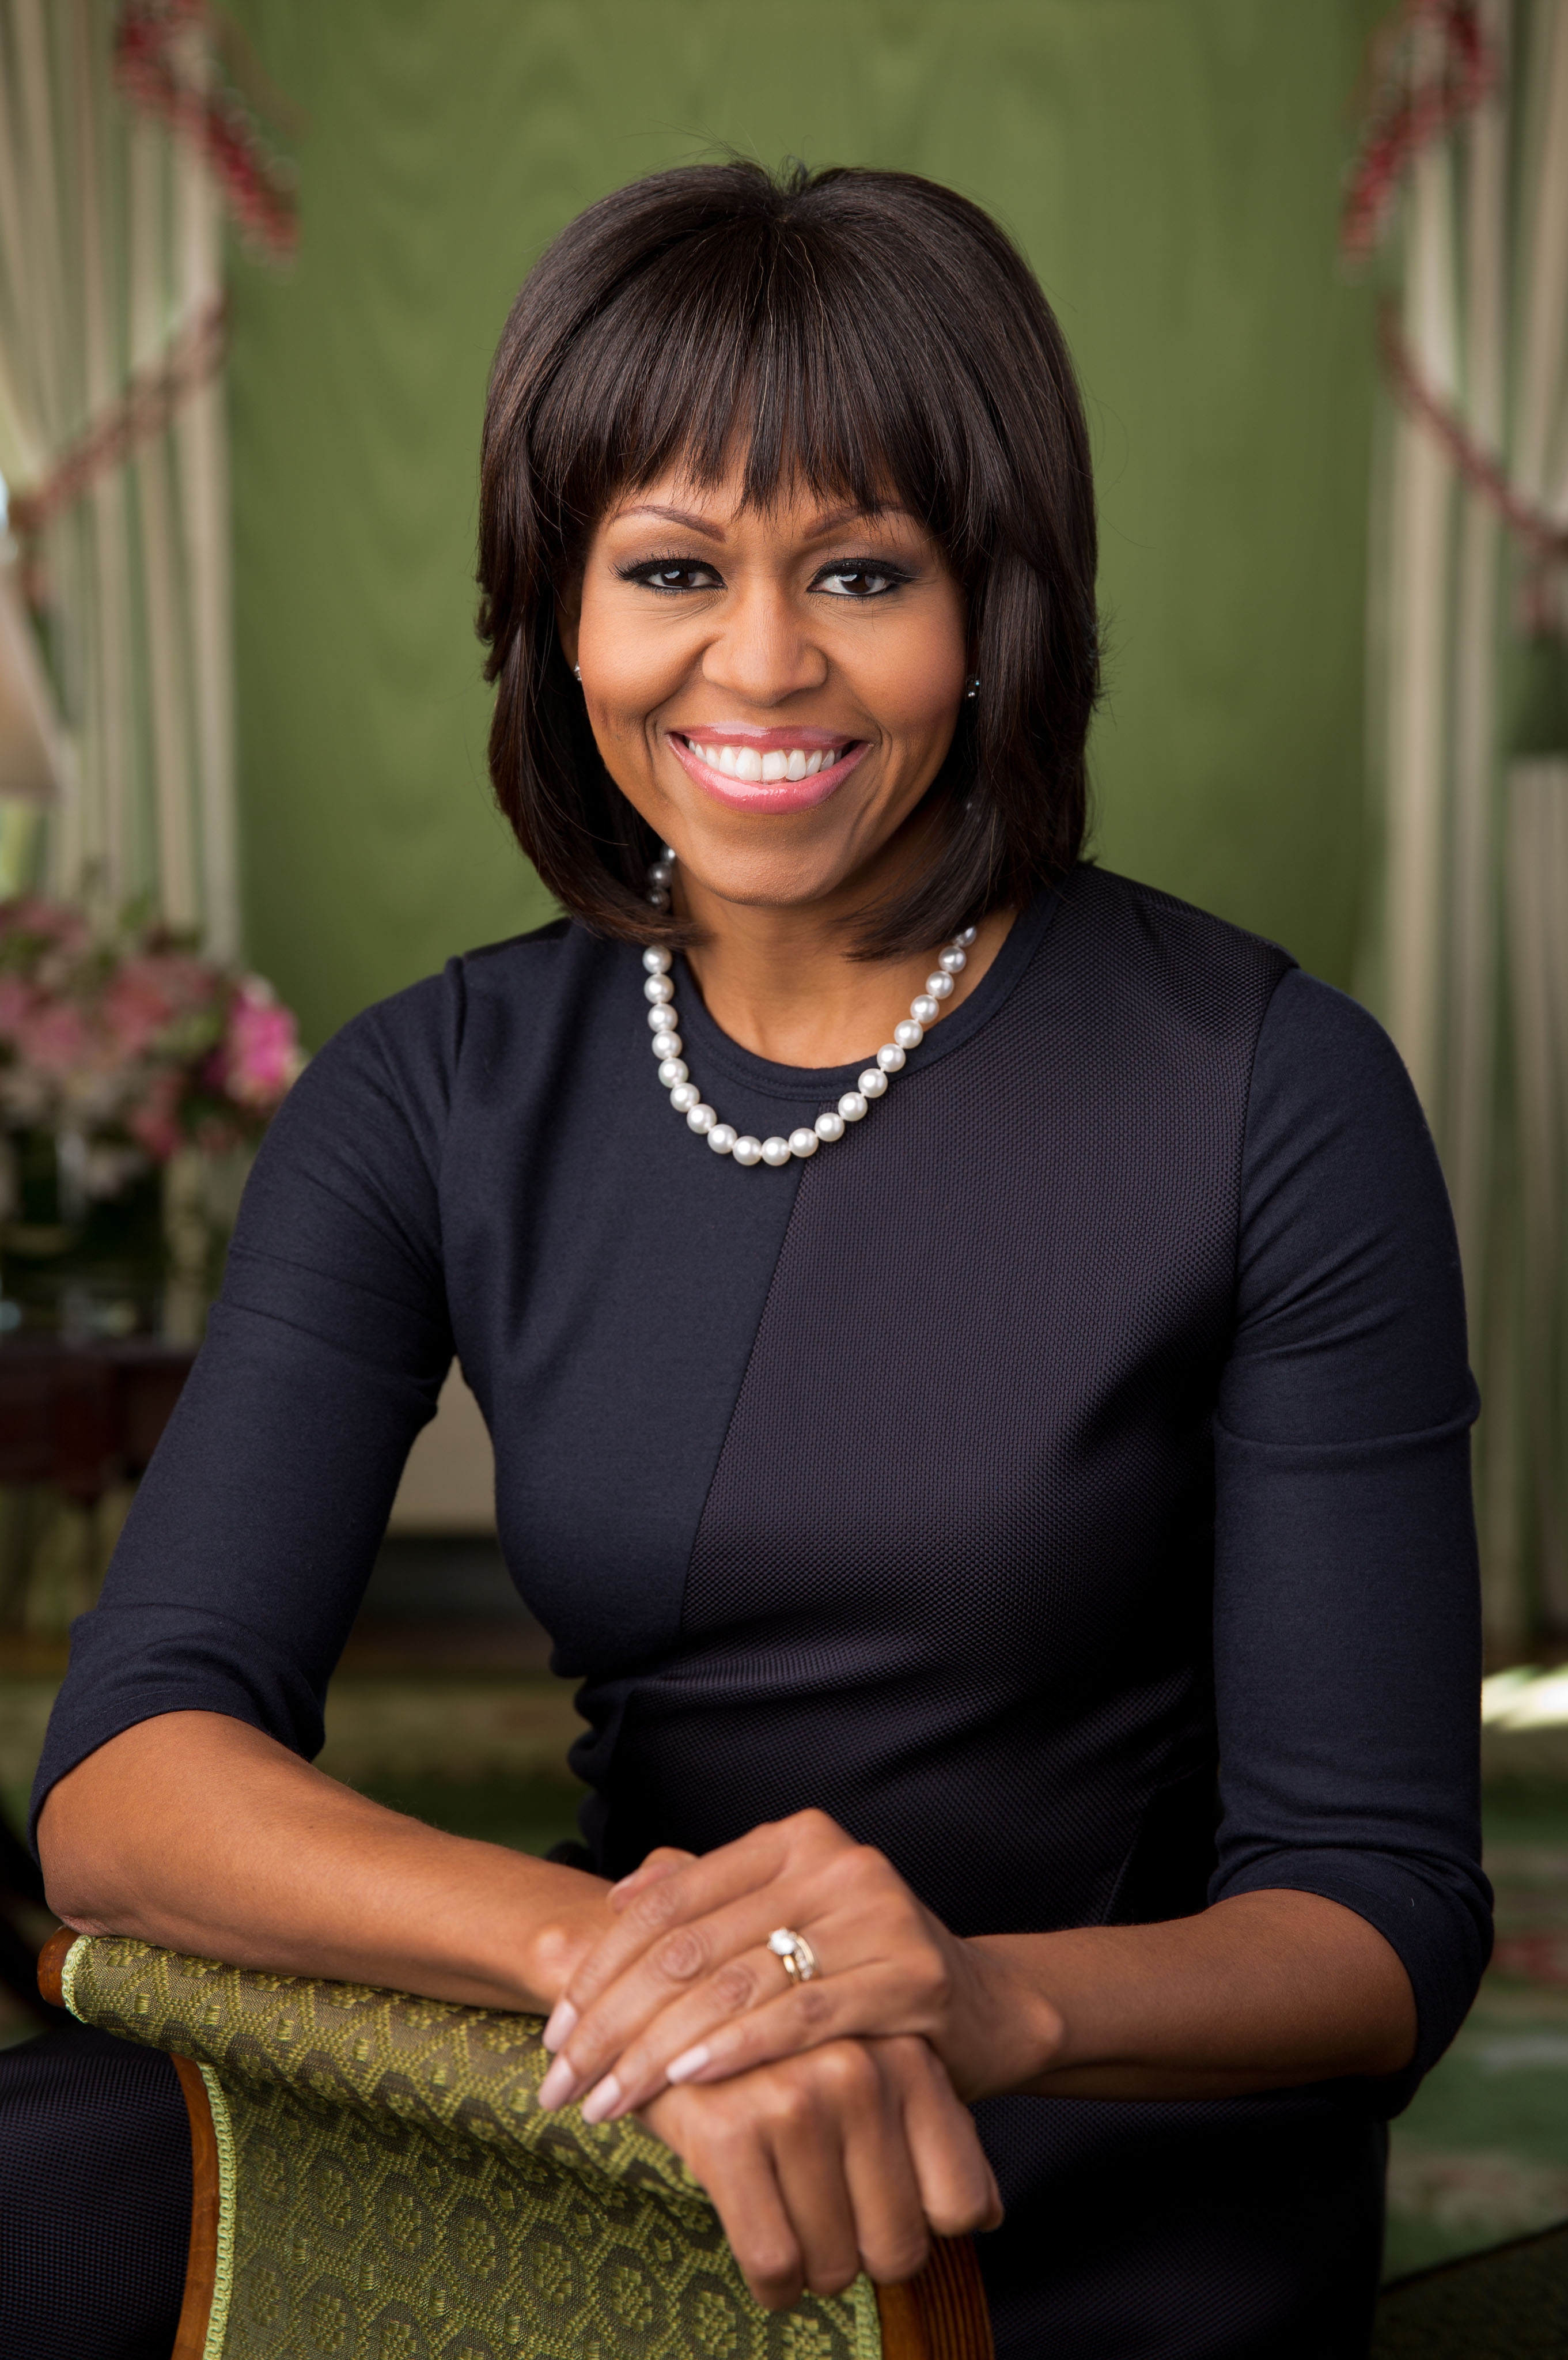 auteur Michelle Obama de la citation En fin de compte, quand vient le temps de prendre cette décision, en tant que président, tout ce que vous avez à vous guider est vos valeurs, votre vision et les expériences de vie qui font de vous qui vous êtes.